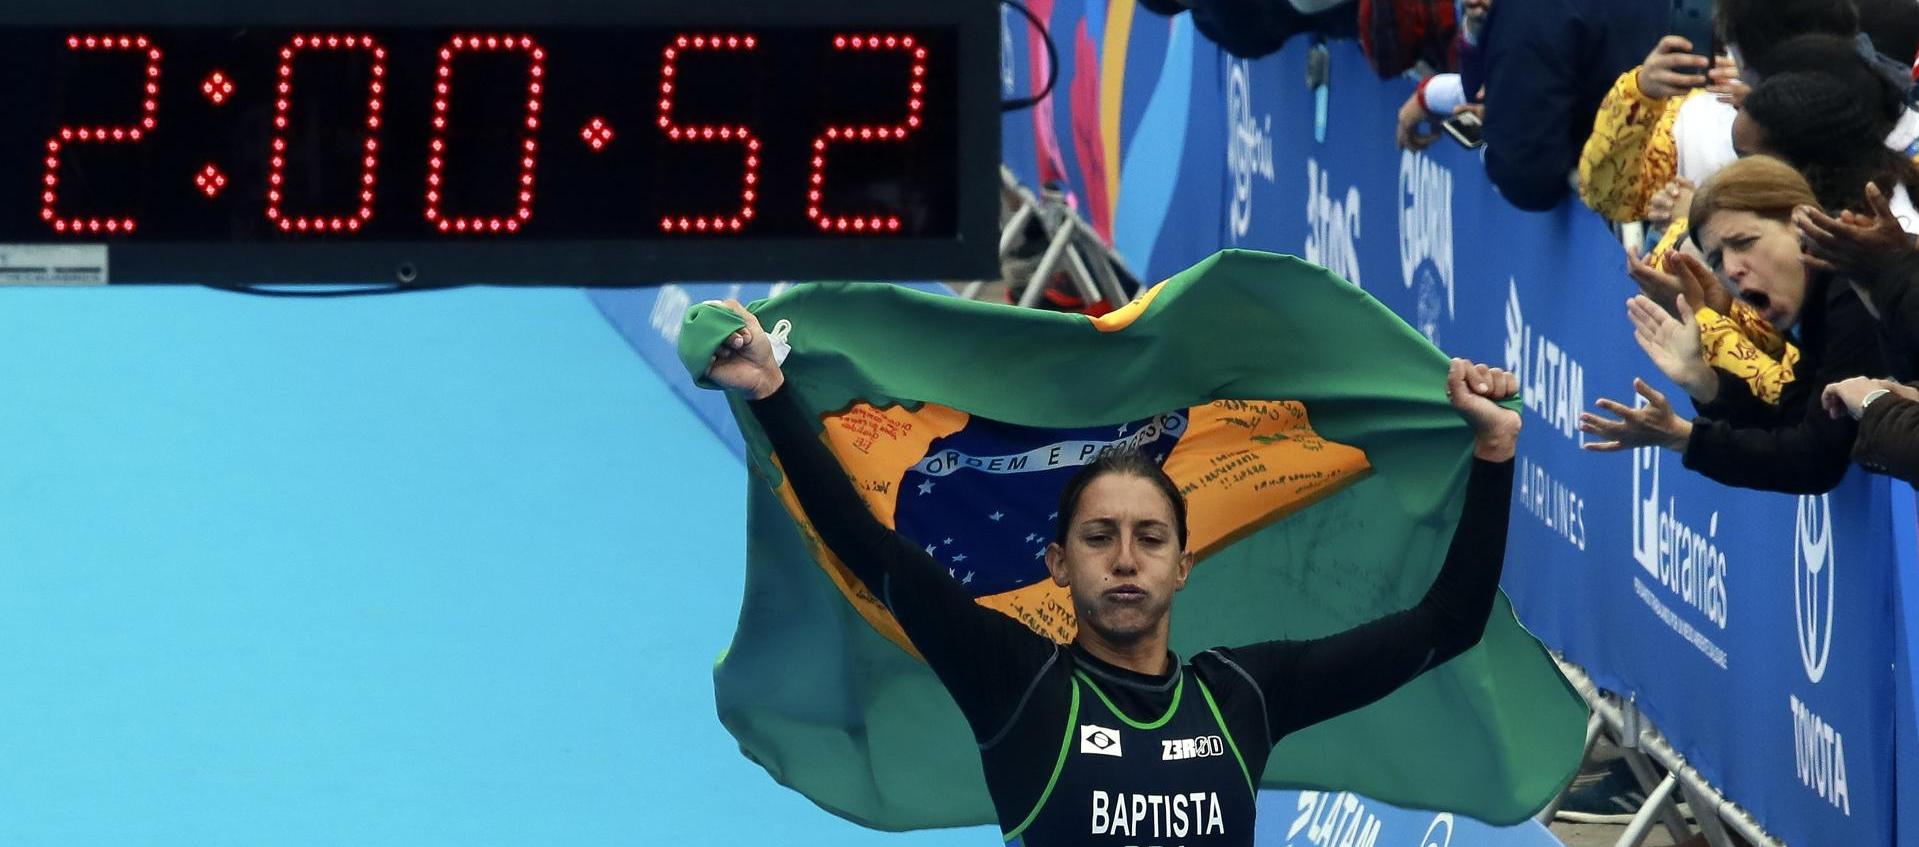 La triatleta brasileña Luisa Baptista